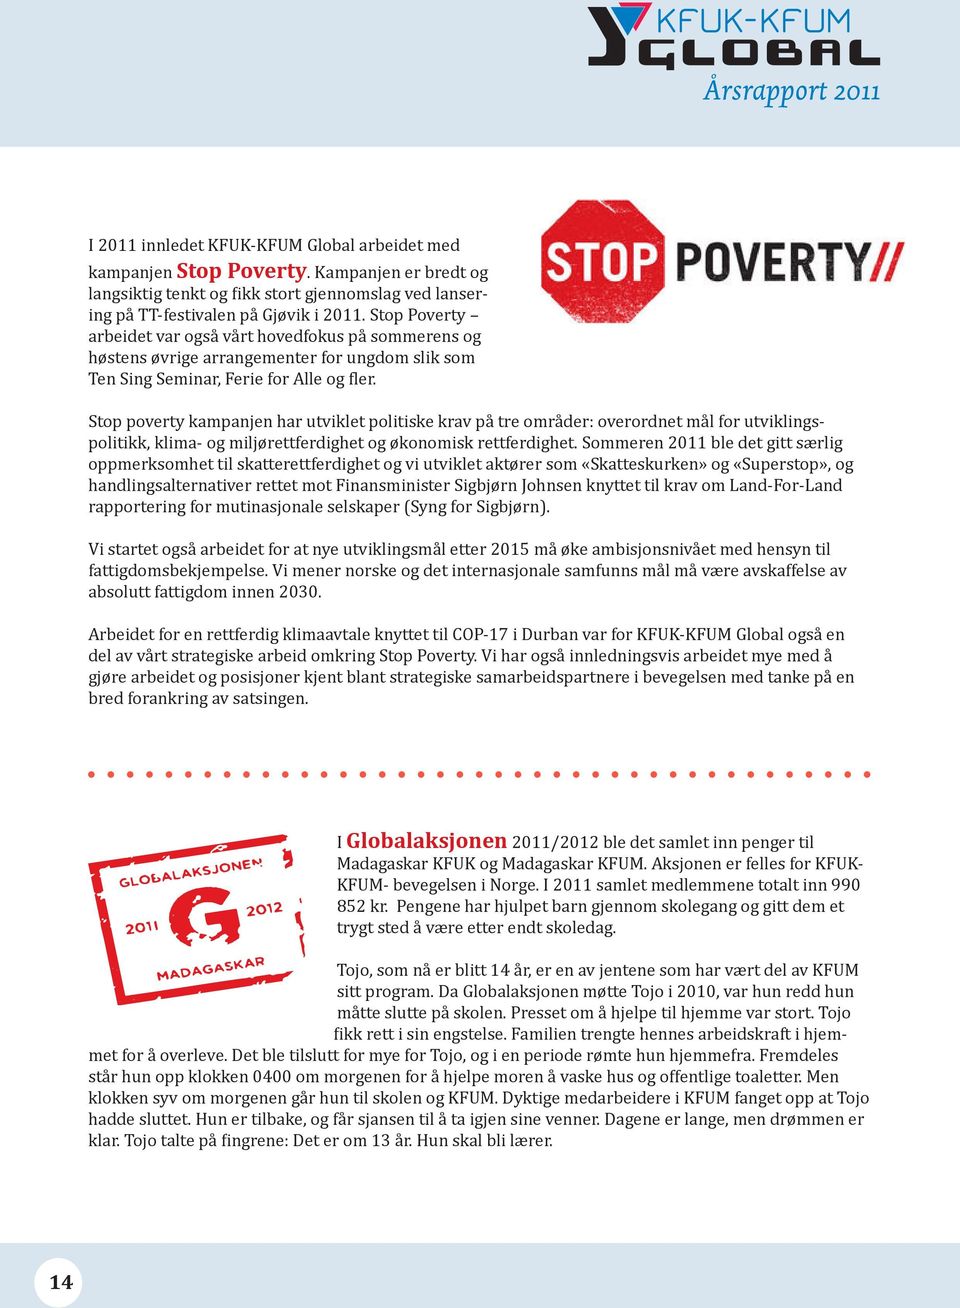 Stop poverty kampanjen har utviklet politiske krav på tre områder: overordnet mål for utviklingspolitikk, klima- og miljørettferdighet og økonomisk rettferdighet.